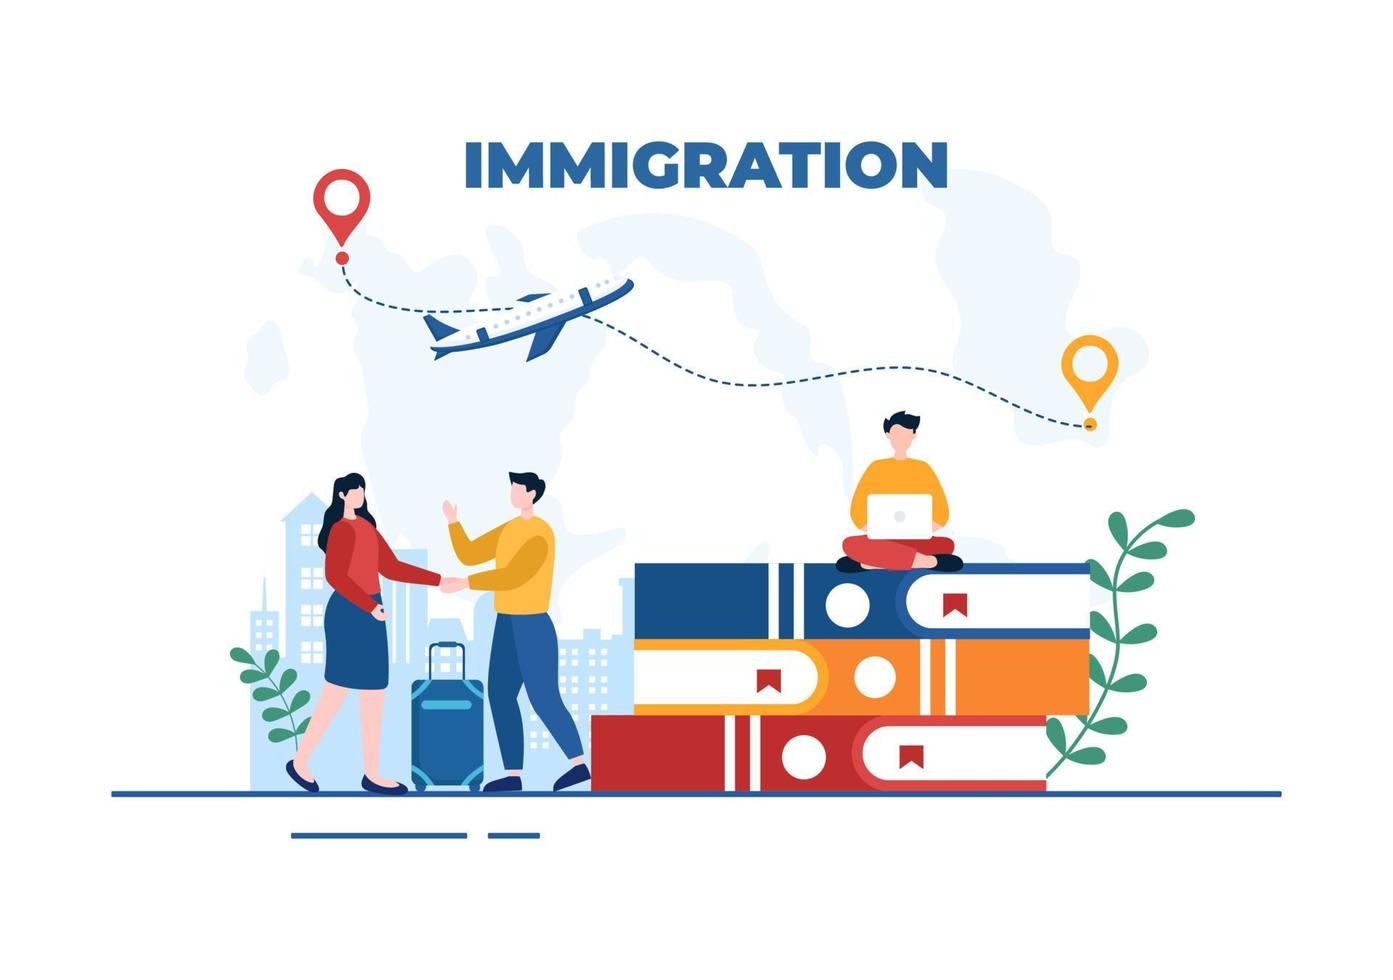 plantilla de inmigración ilustración plana de dibujos animados dibujados a mano del documento con visa y pasaporte para mudarse a otro país vector